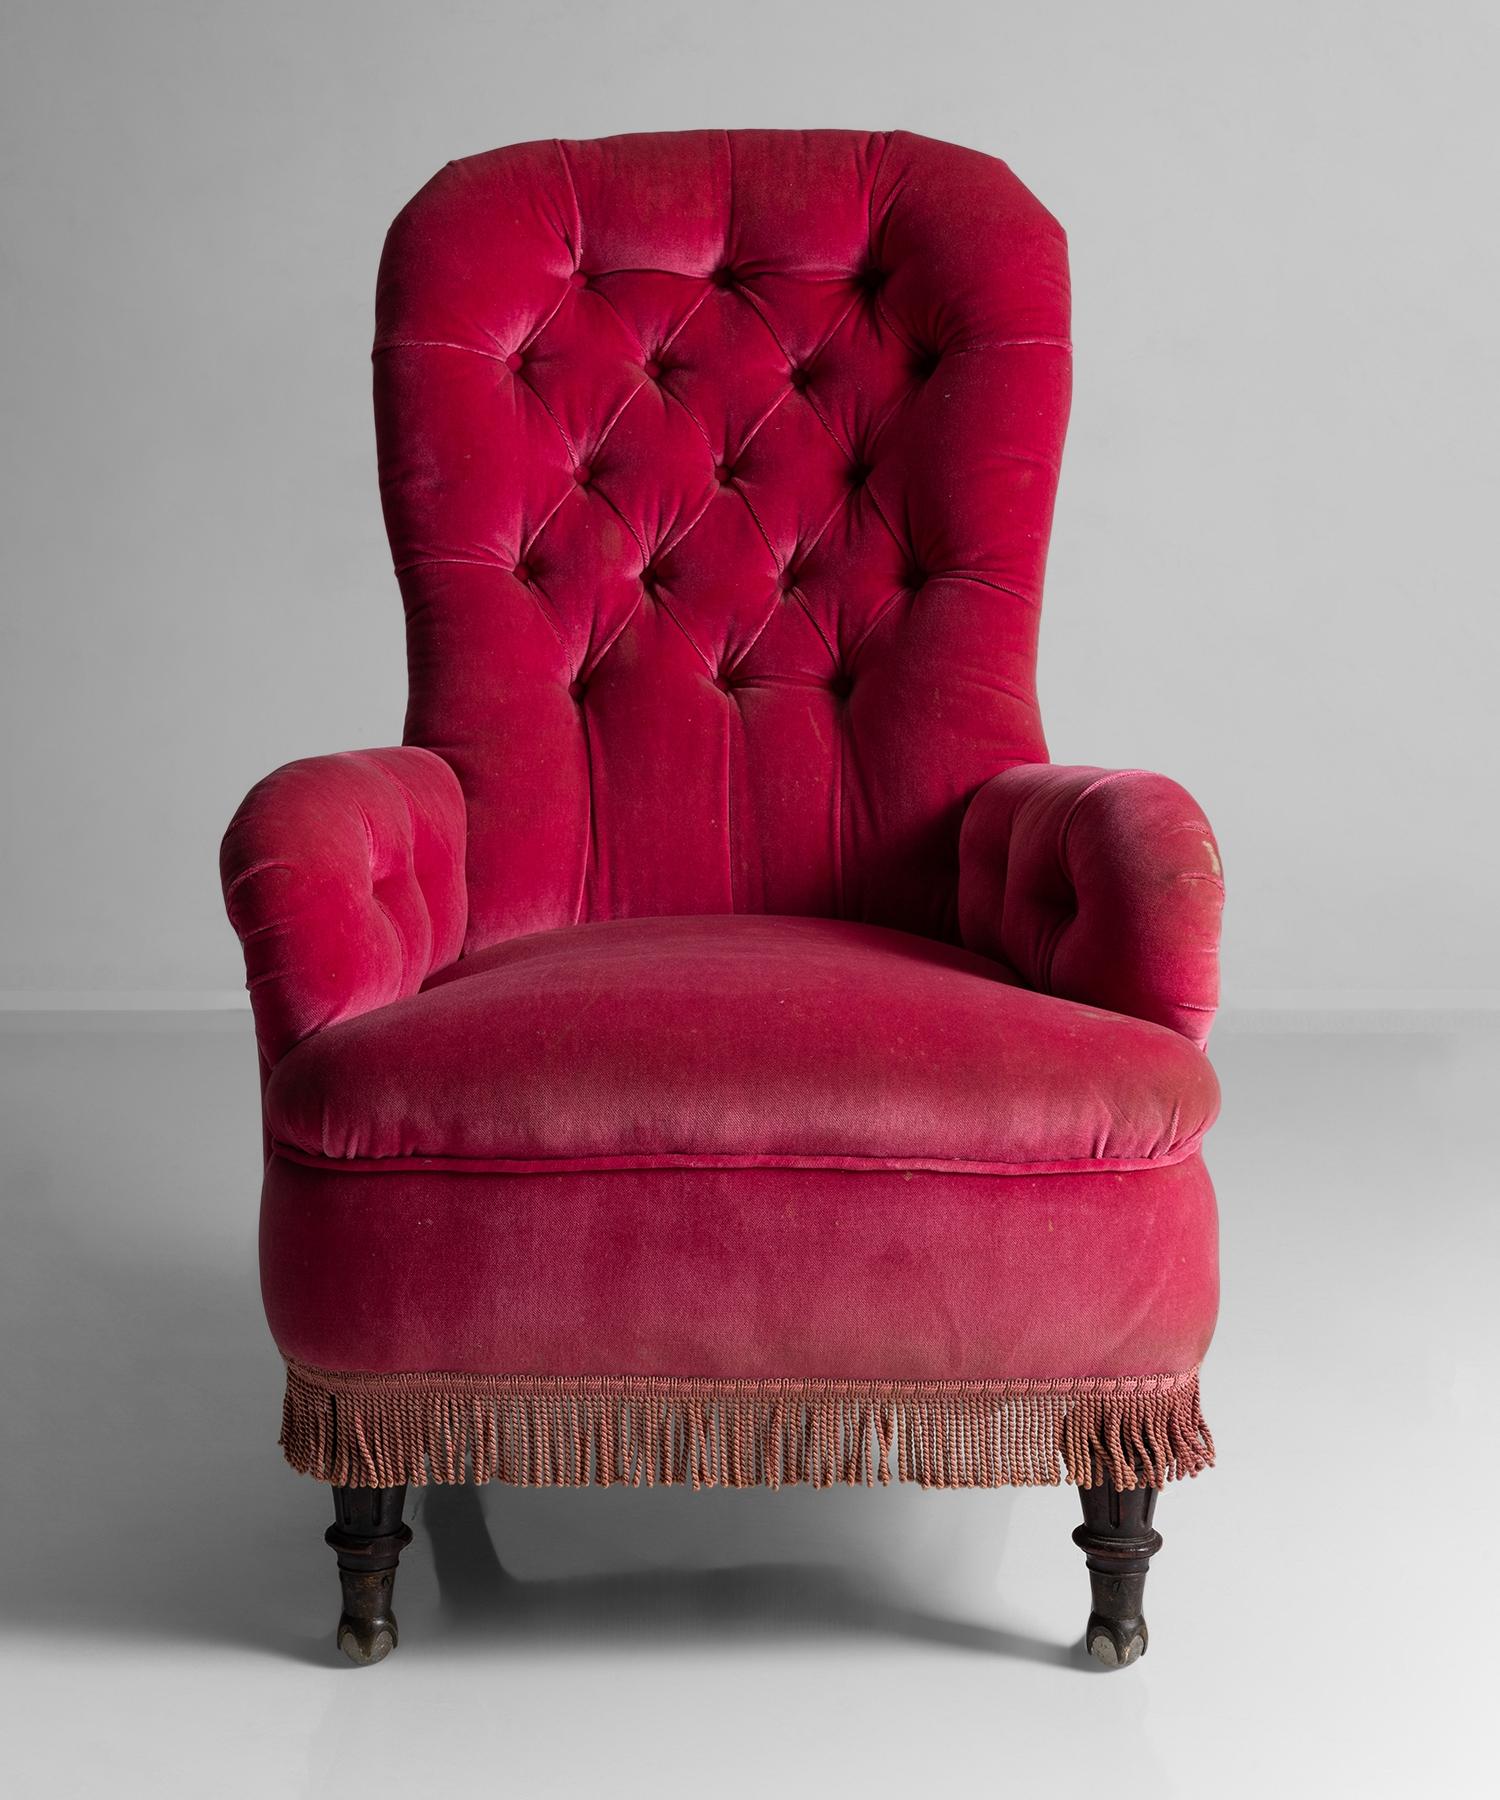 19th Century Spoon Back Armchair